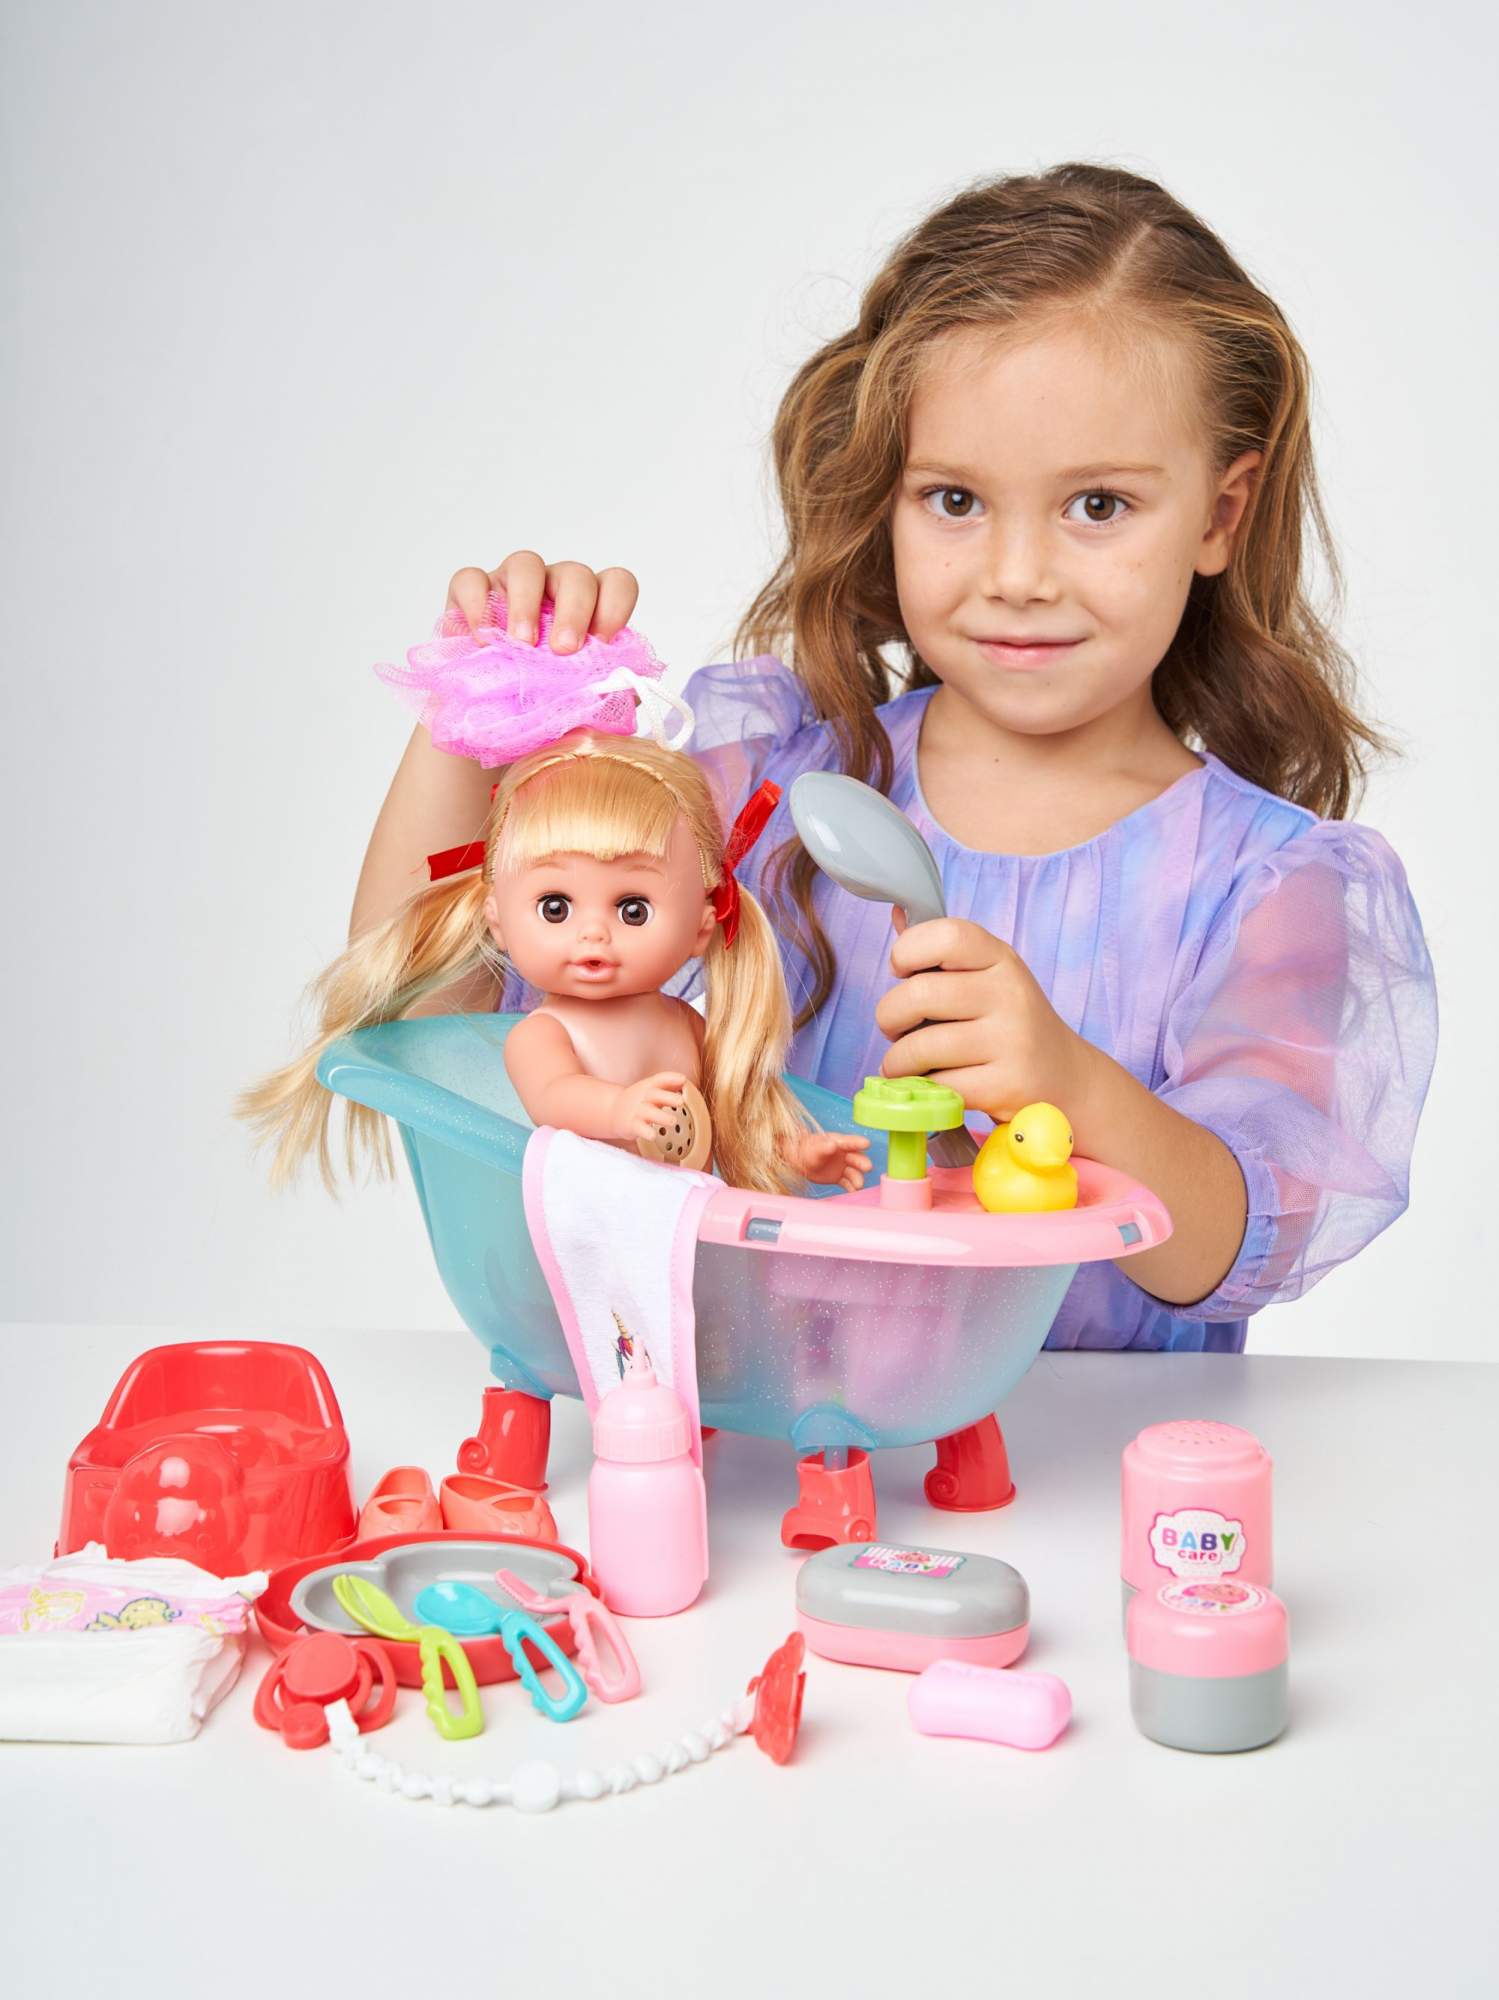 Кукла-пупс Грег, 22 см от Paola Reina за 1 руб. Купить в официальном магазине Paola Reina